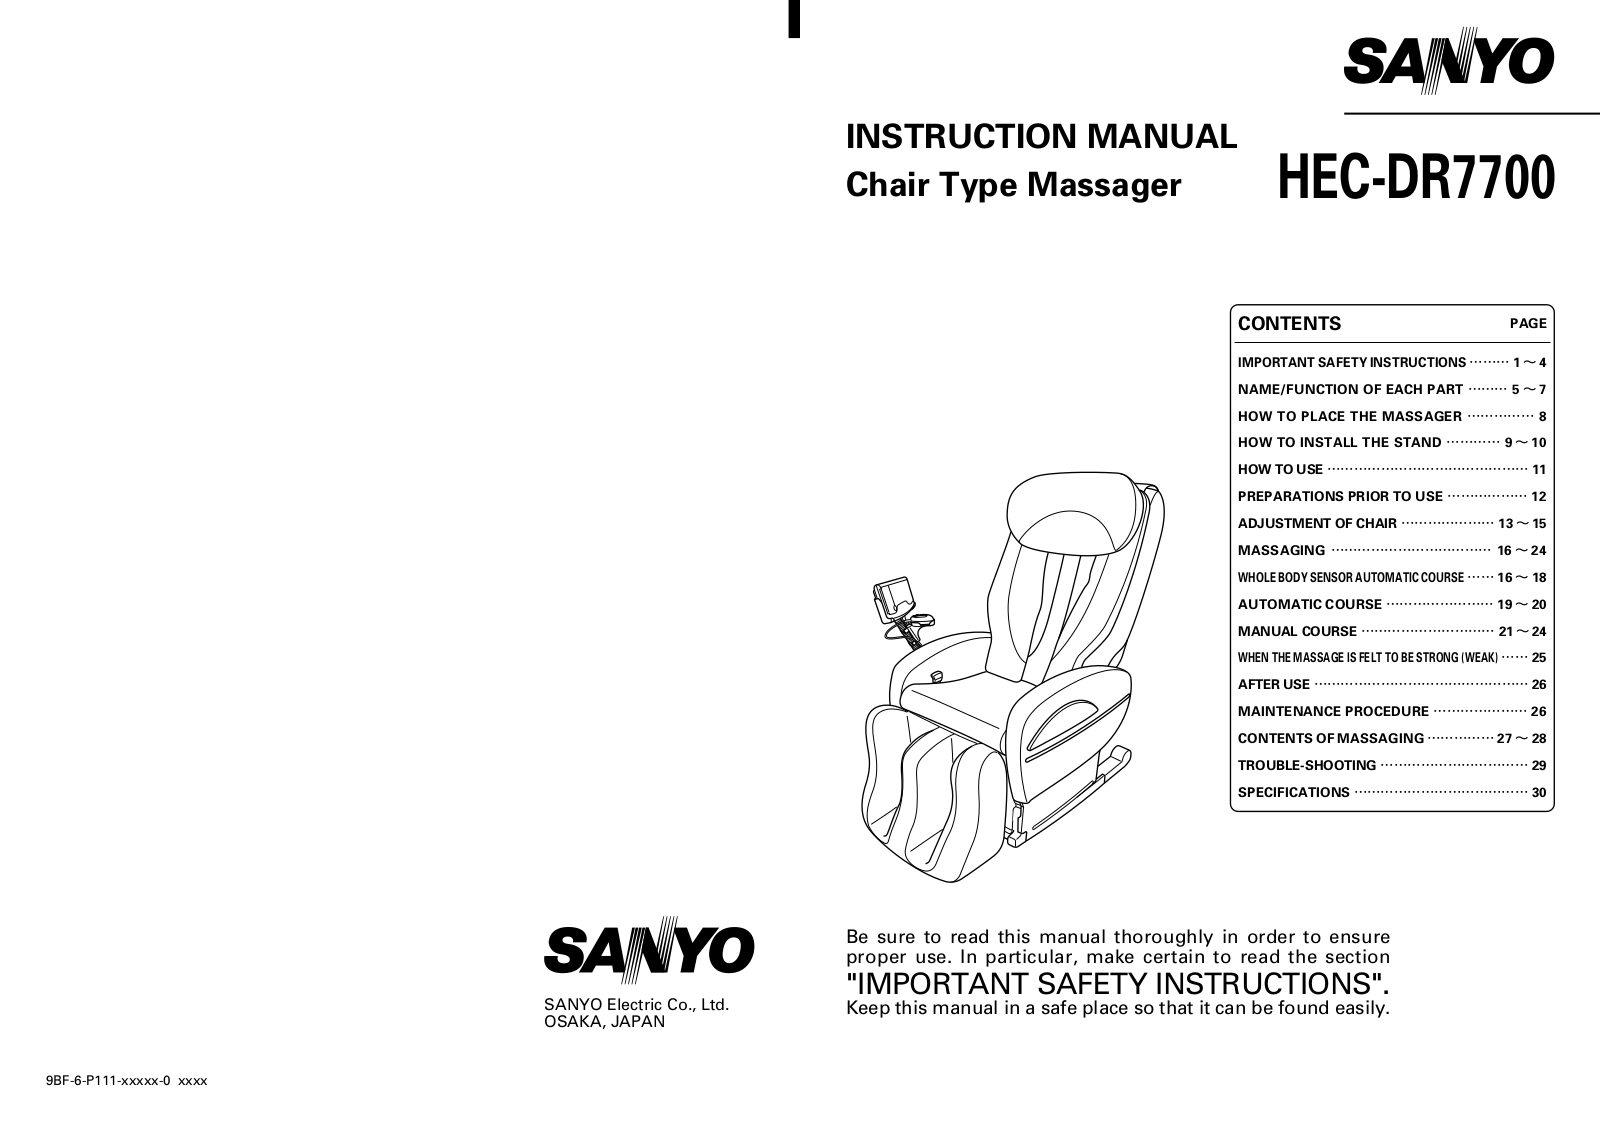 Sanyo HEC-DR7700 Manual